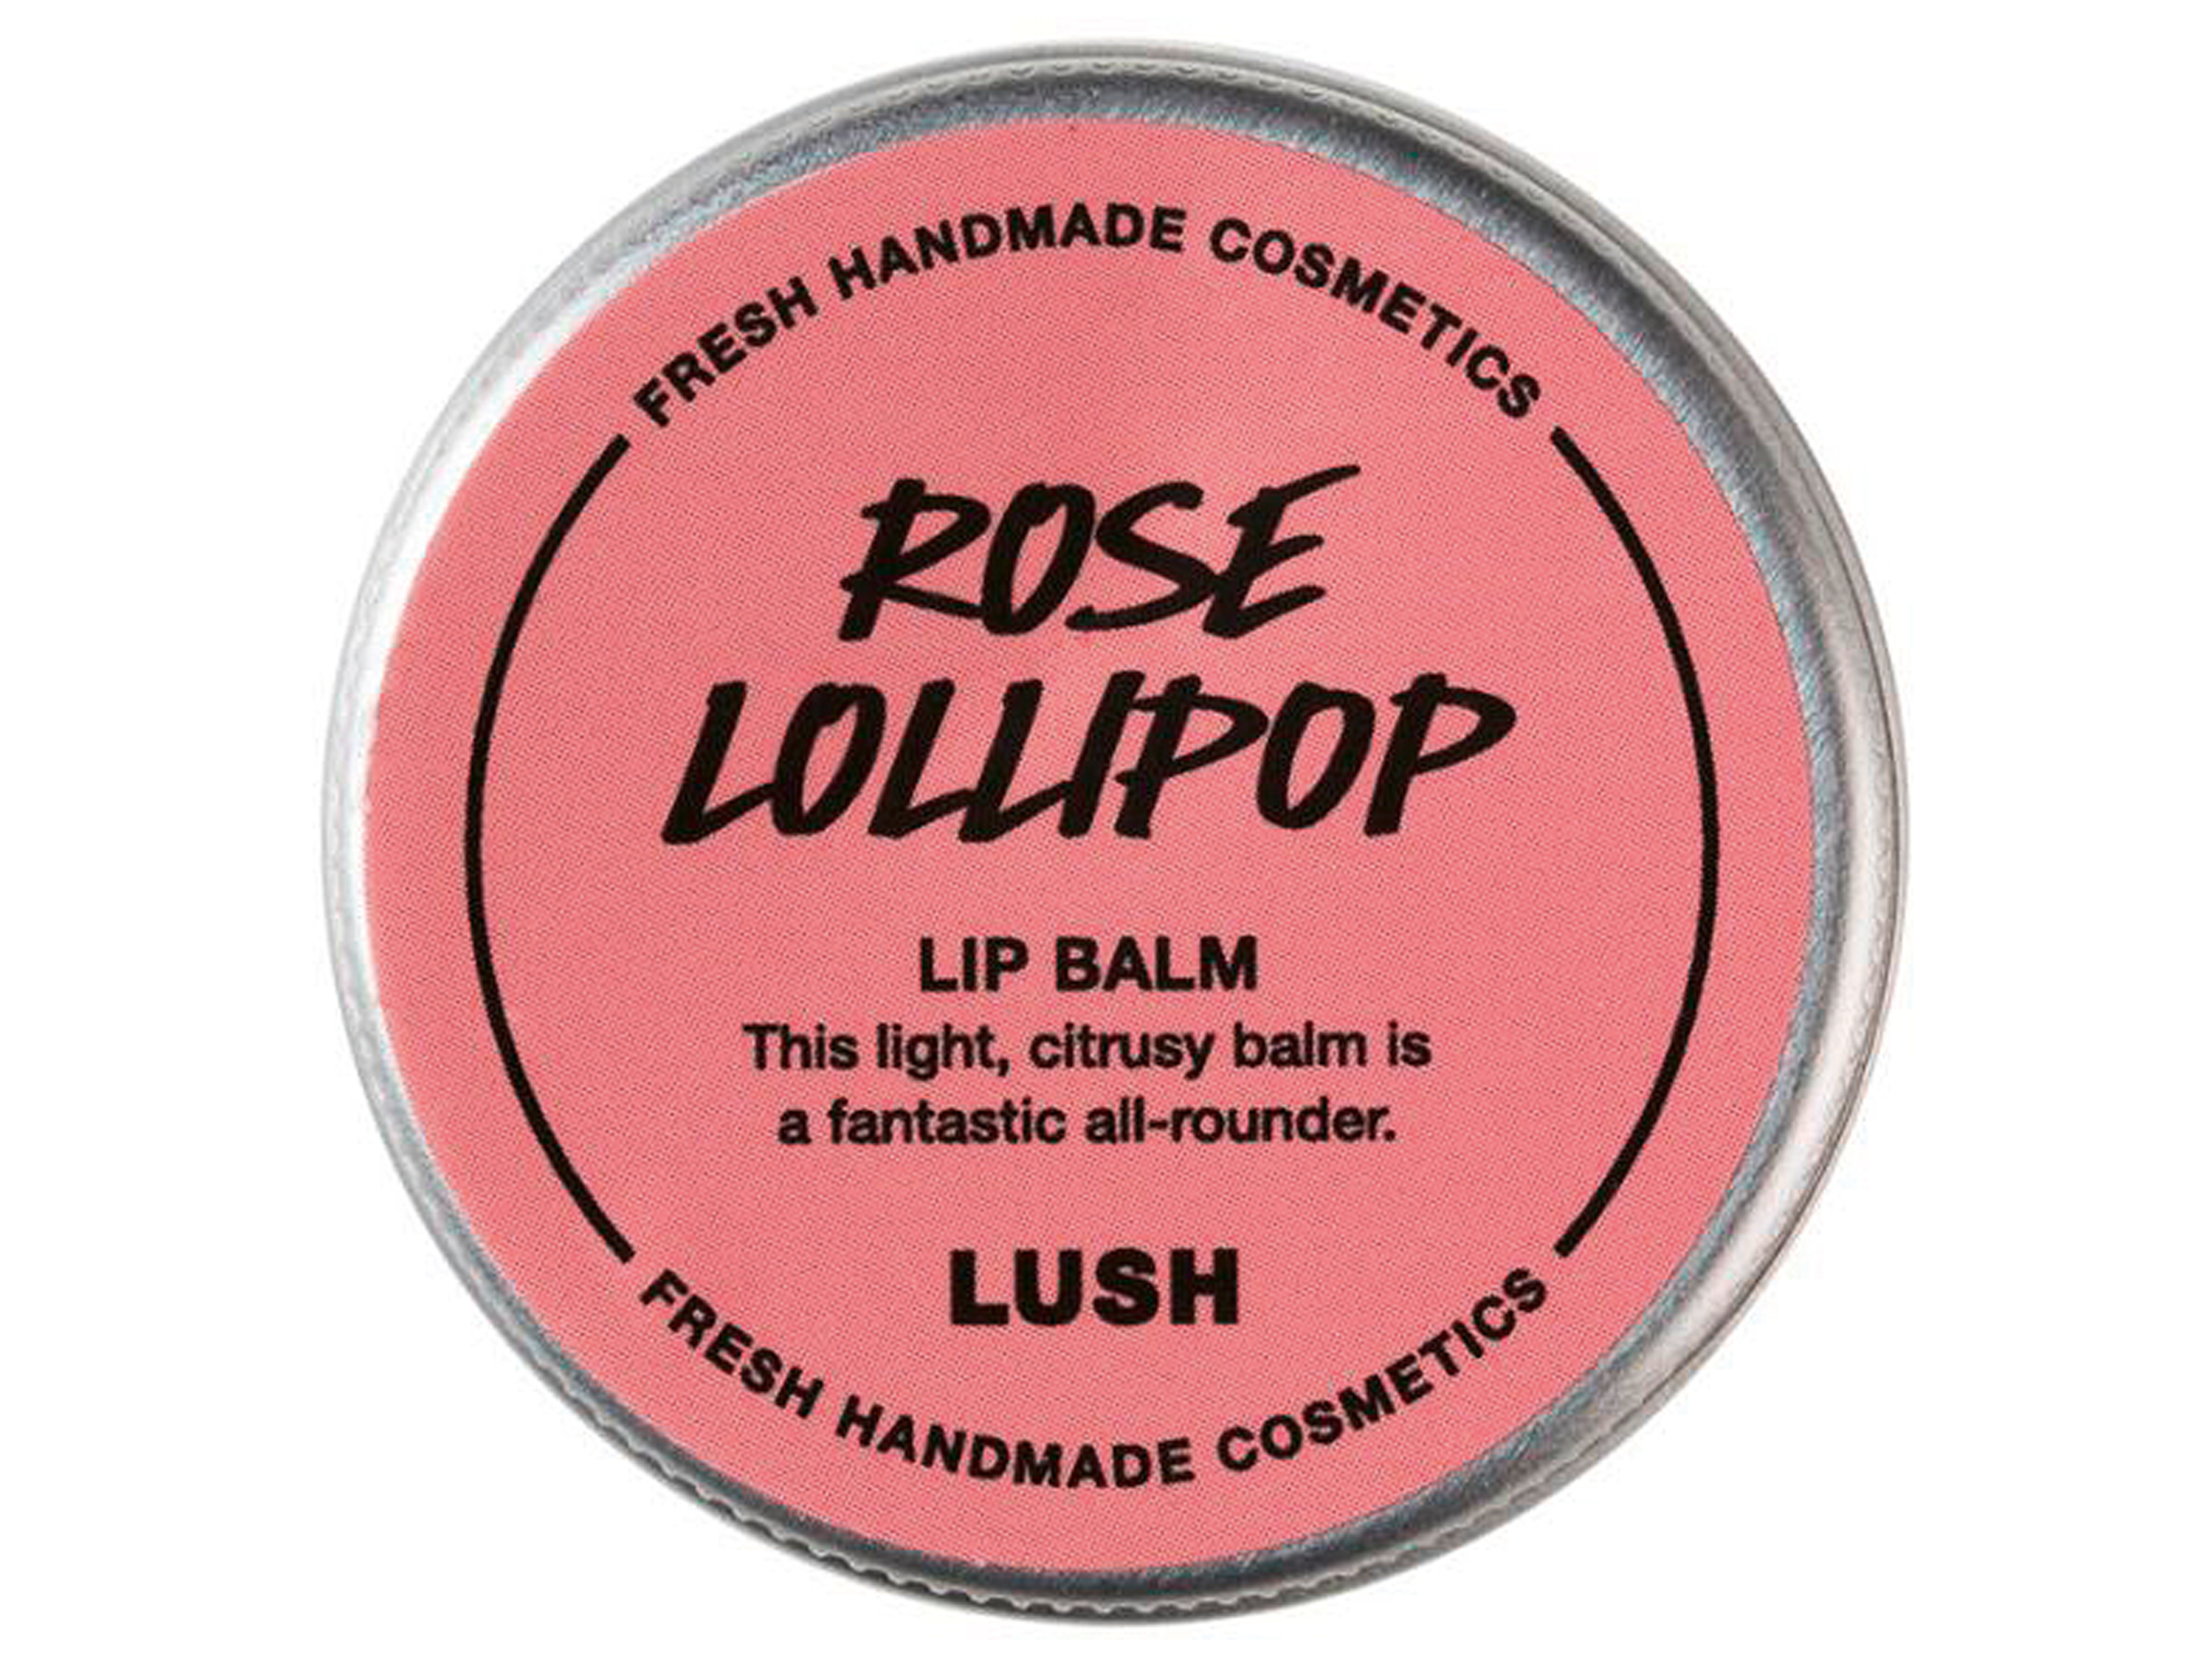 lush-rose